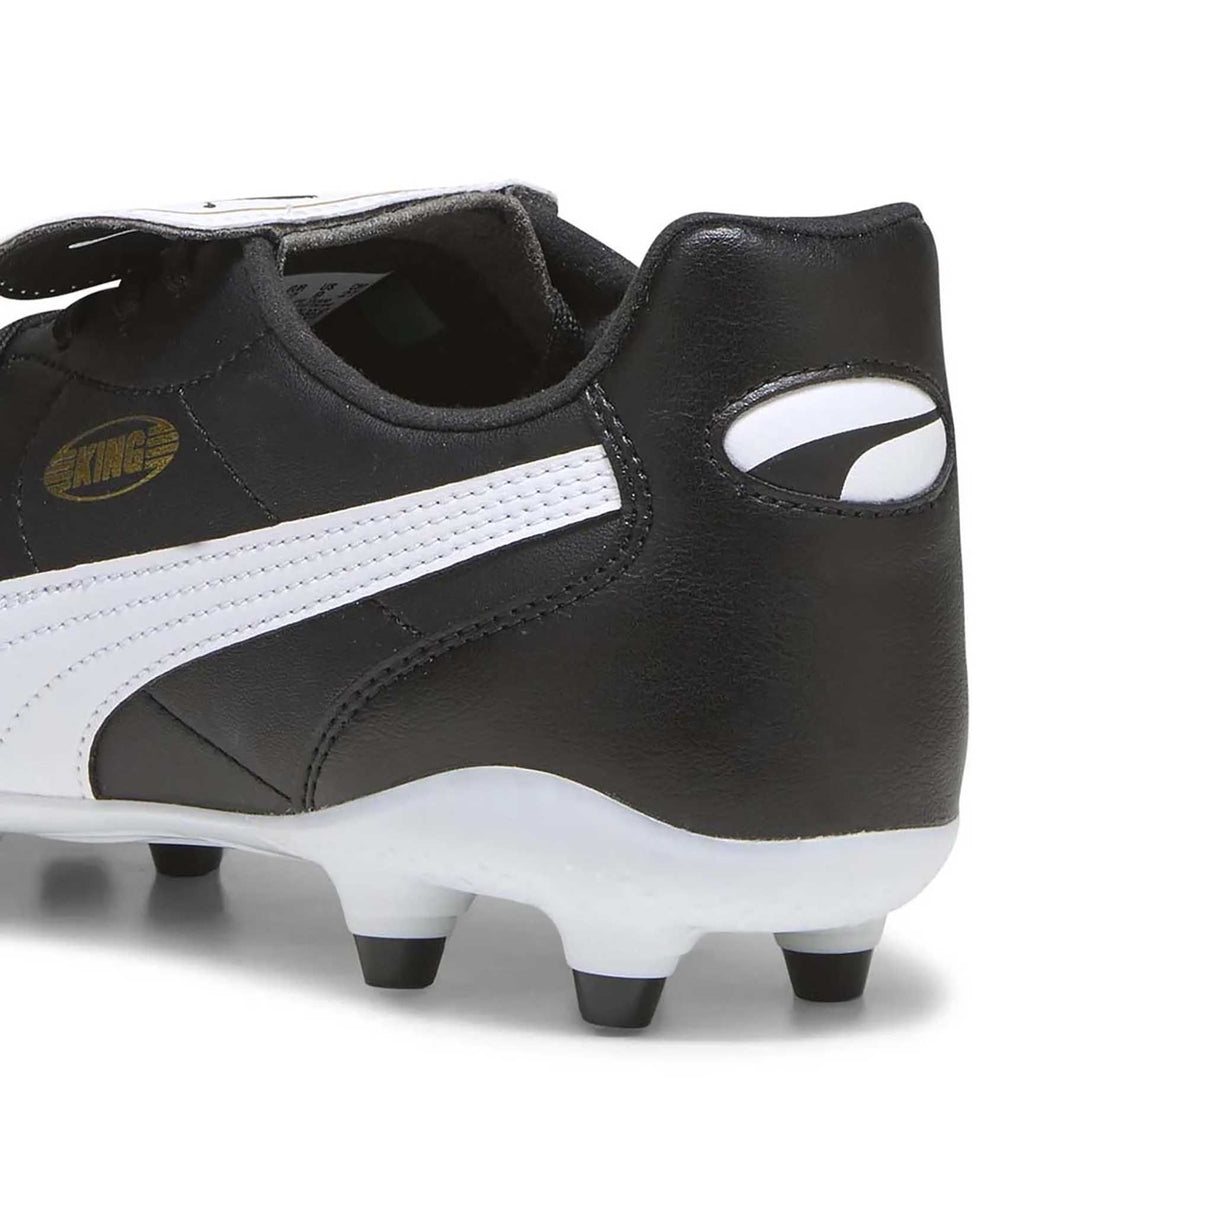 Puma King Top FG/AG souliers de soccer à crampons pour adultes talon - noir / blanc